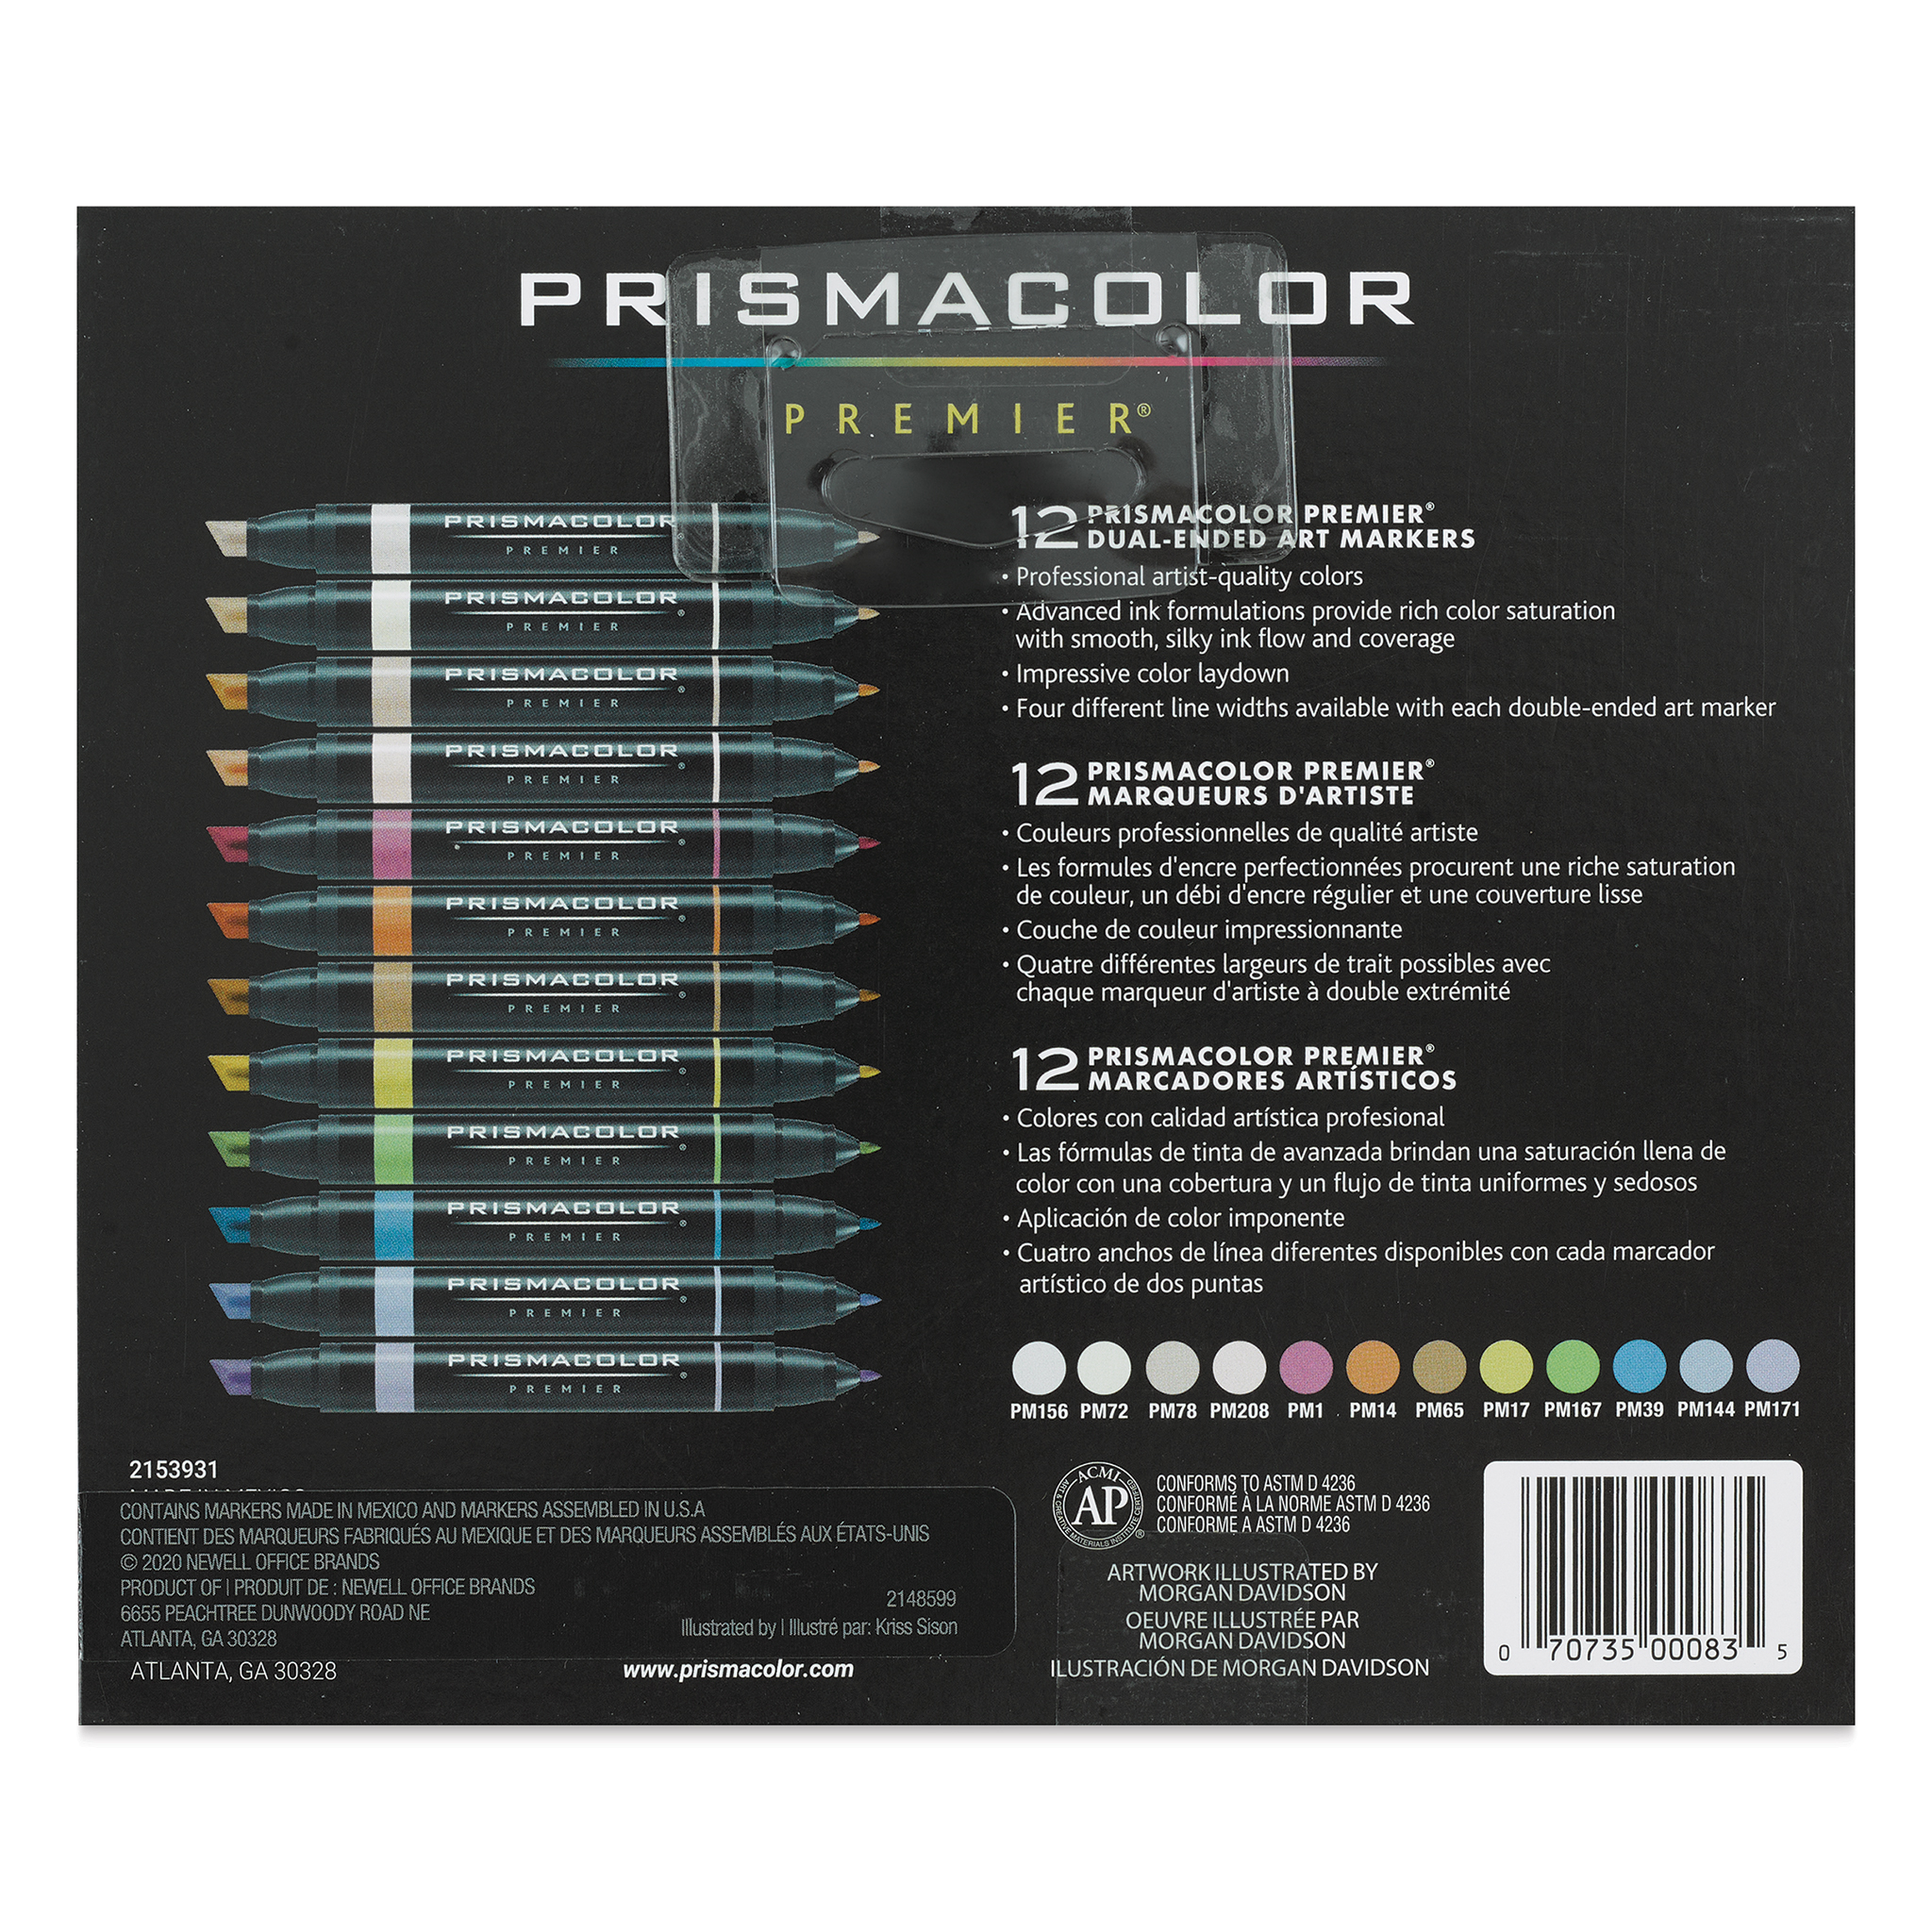 Prismacolor Premier Dual-Ended Art Marker - Black